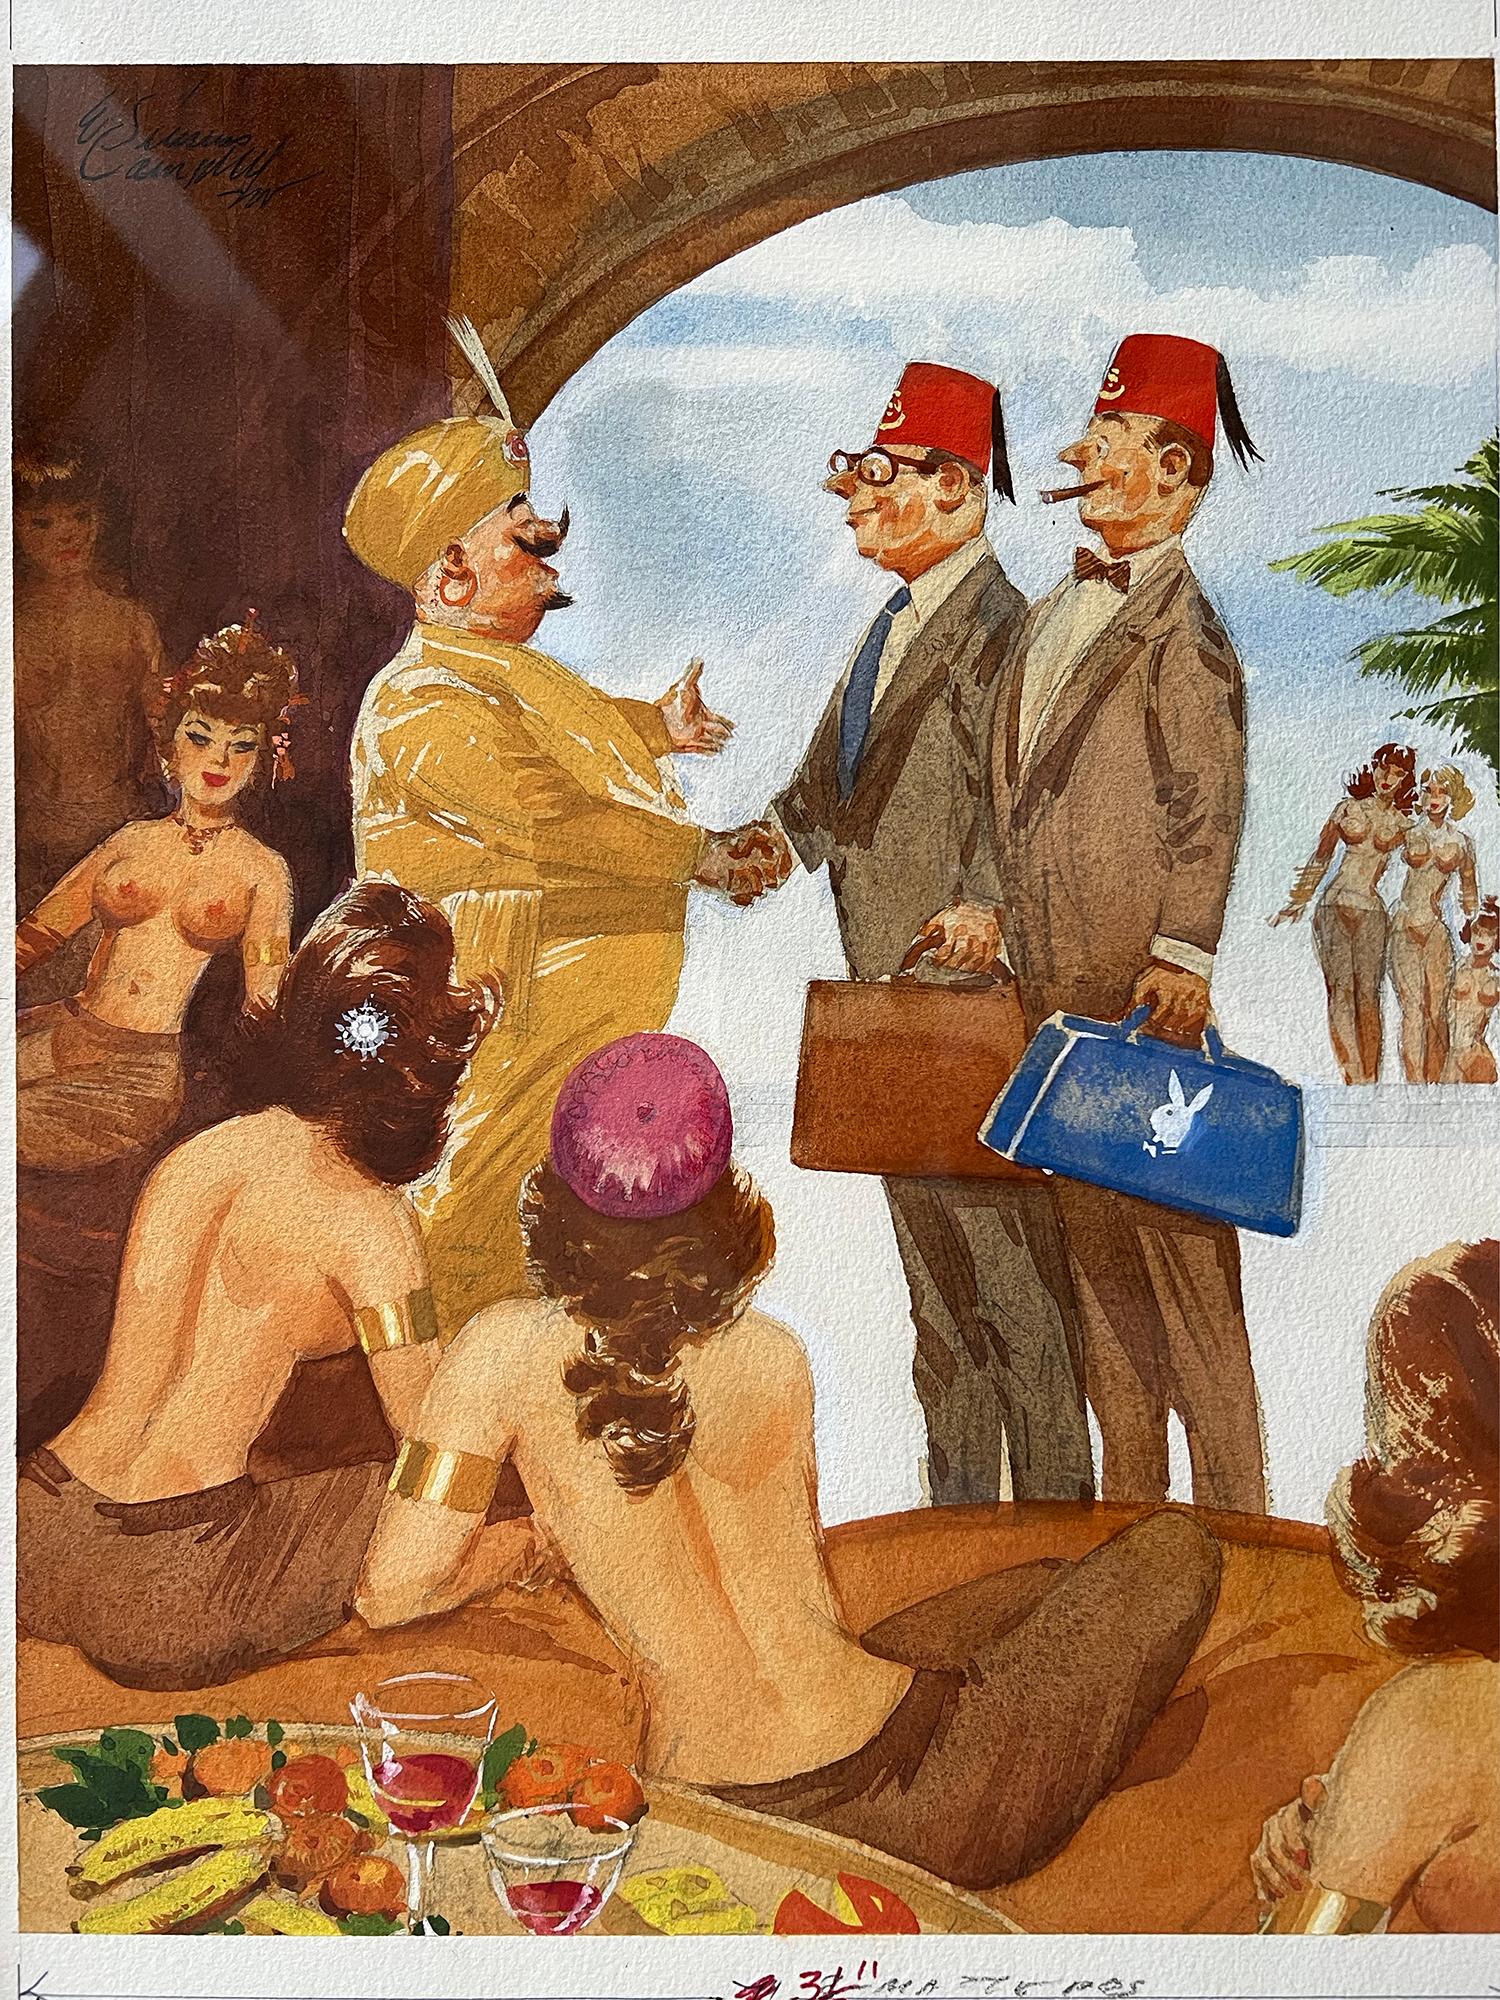 Schöne Jungfrauen nackte Frauen Harem, Playboy Cartoon Afrikanische Illustratorin (Impressionismus), Painting, von E. Simms Campbell